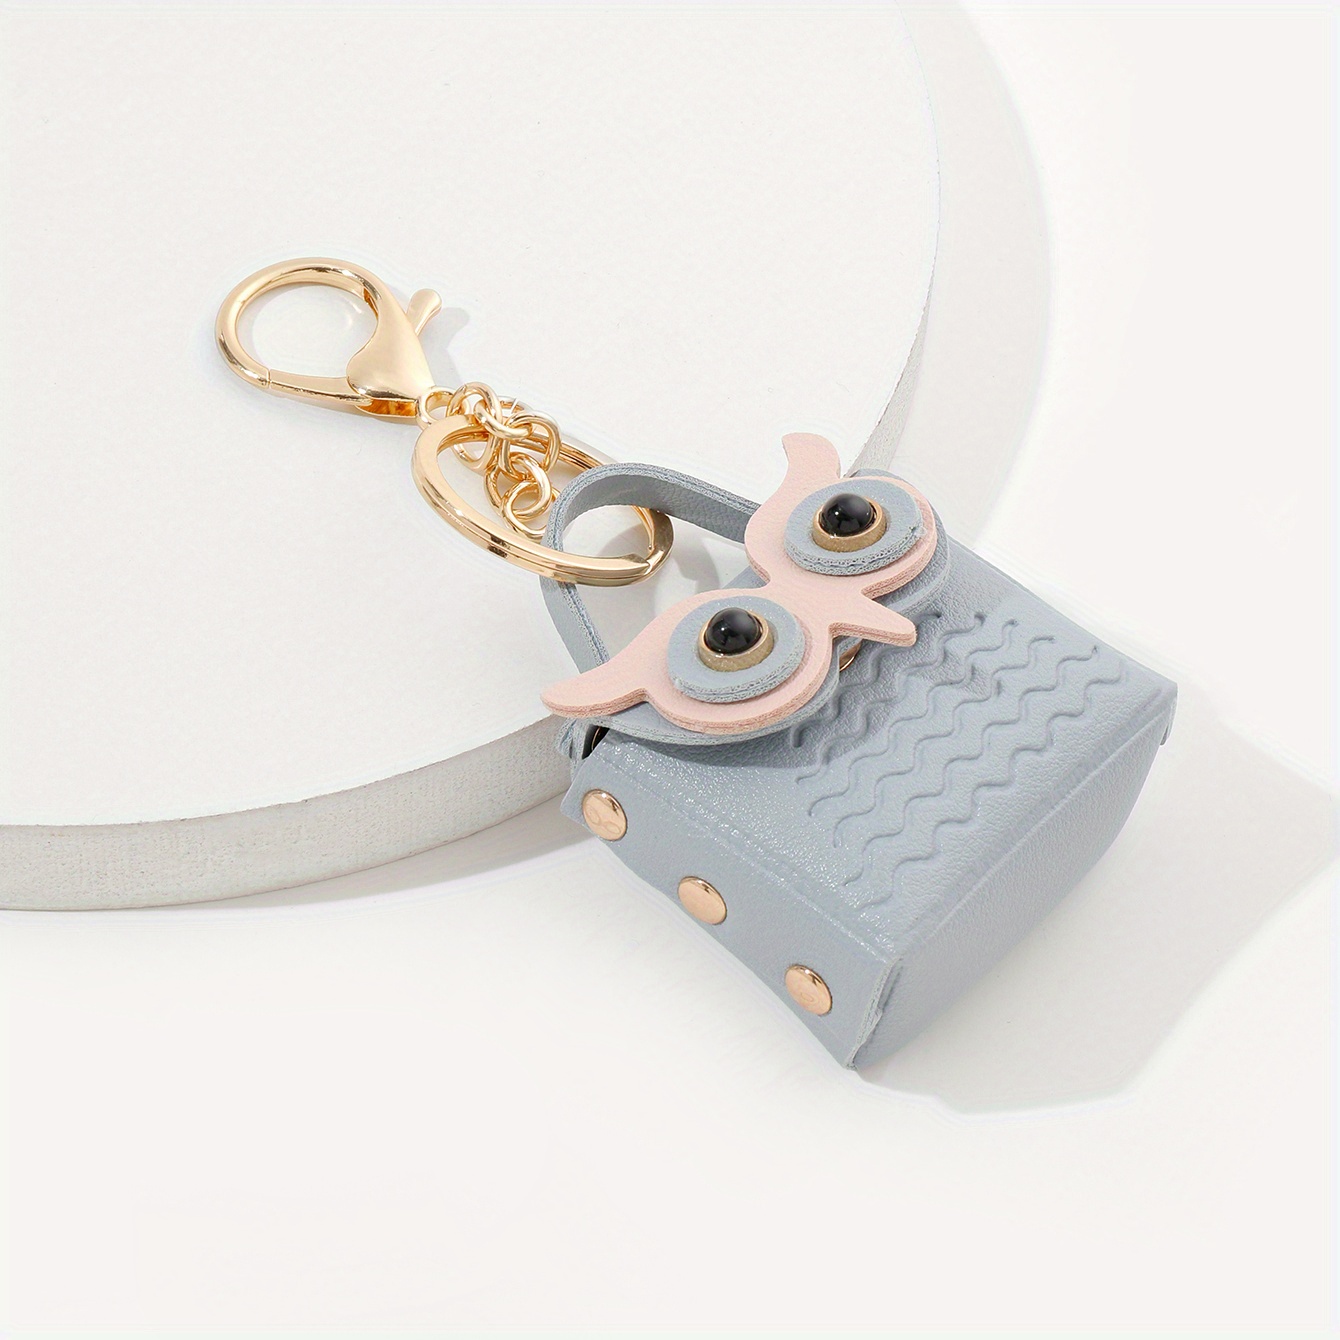 SNSDOJ Portable Cute Kids Animal Printed Pattern Mini Key Bag Owl